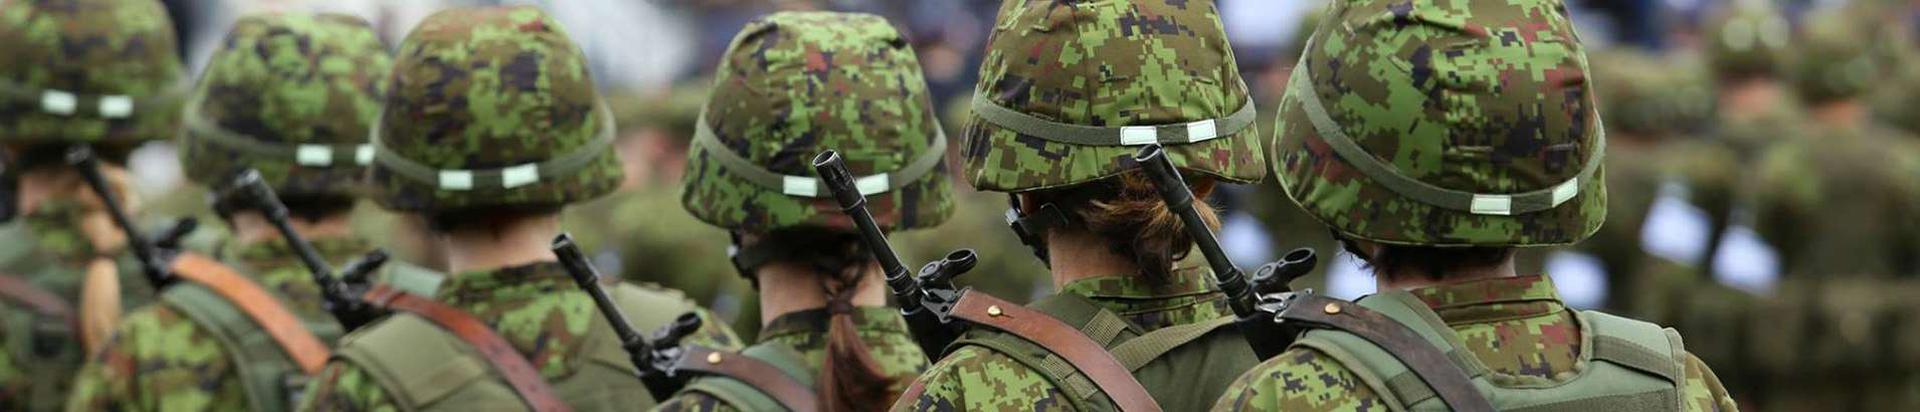 Kaitseliit on vabatahtlik, sõjaväeliselt korraldatud, relvi valdav ja sõjaväeliste harjutustega tegelev Eesti riigikaitseorganisatsioon ja Eesti kaitsejõudude üks osa